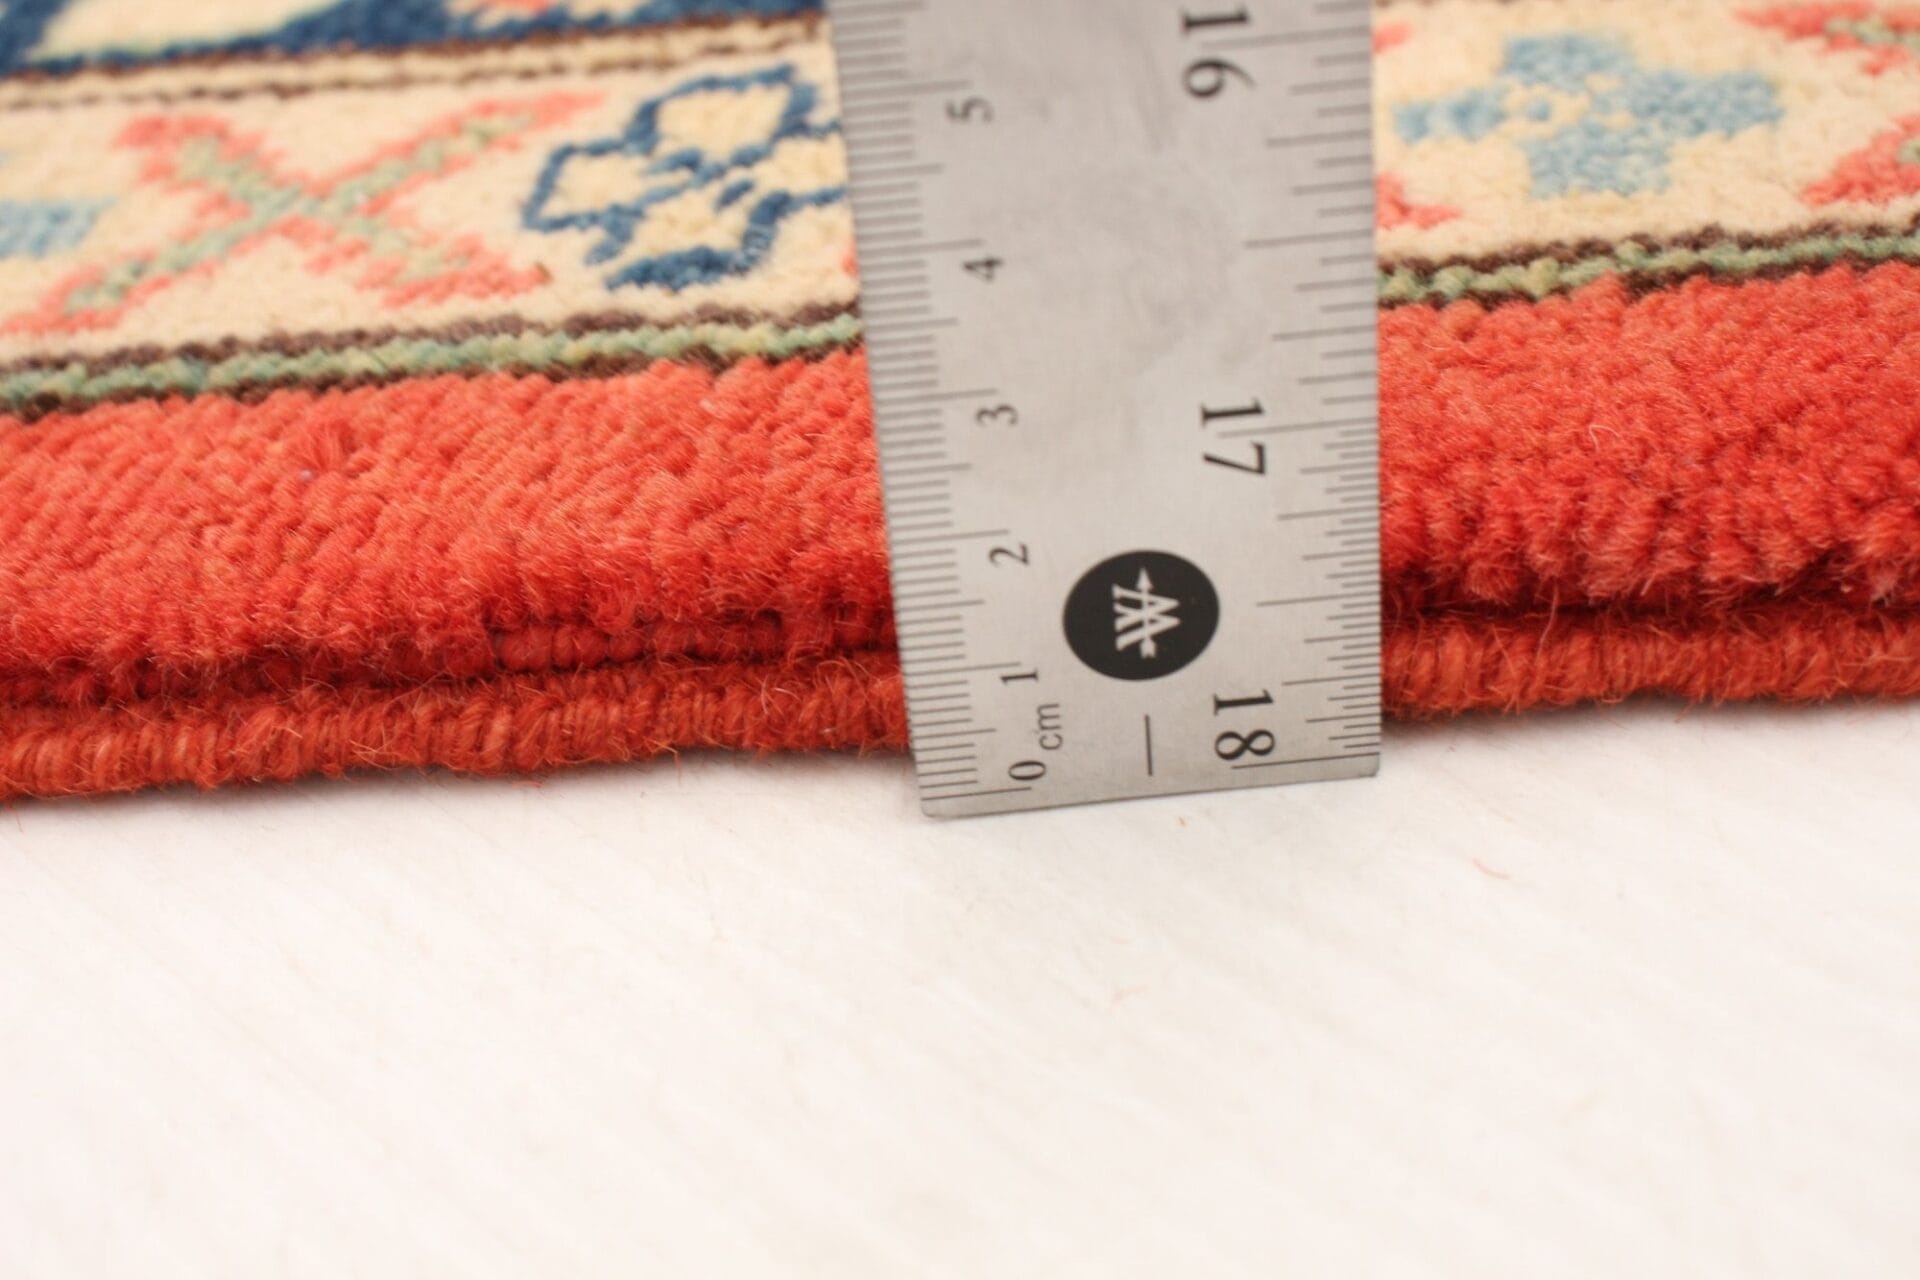 Beschrijving: Een oranje en blauw tapijt met een liniaal ernaast.